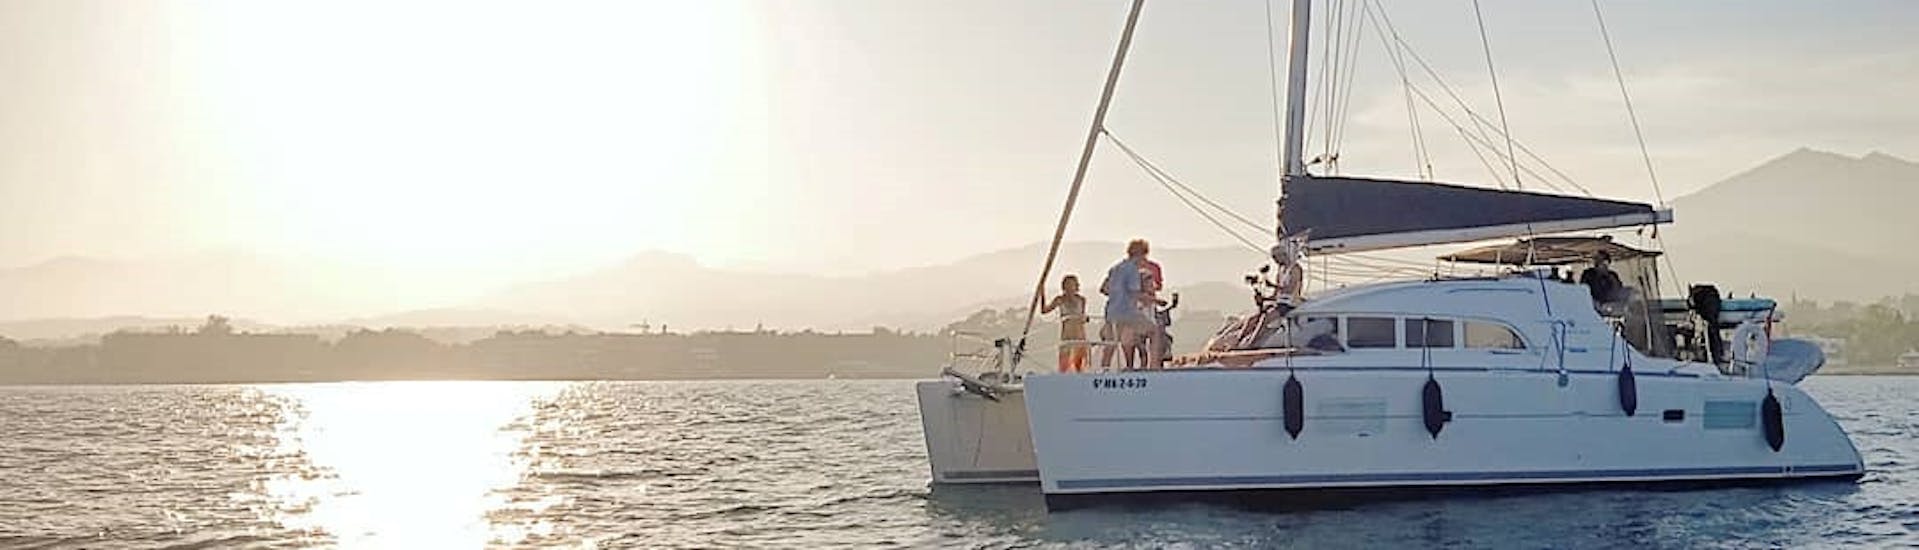 Mensen genieten aan boord van Catamaran Trip langs Costa del Sol vanuit Marbella met Royal Catamaran.